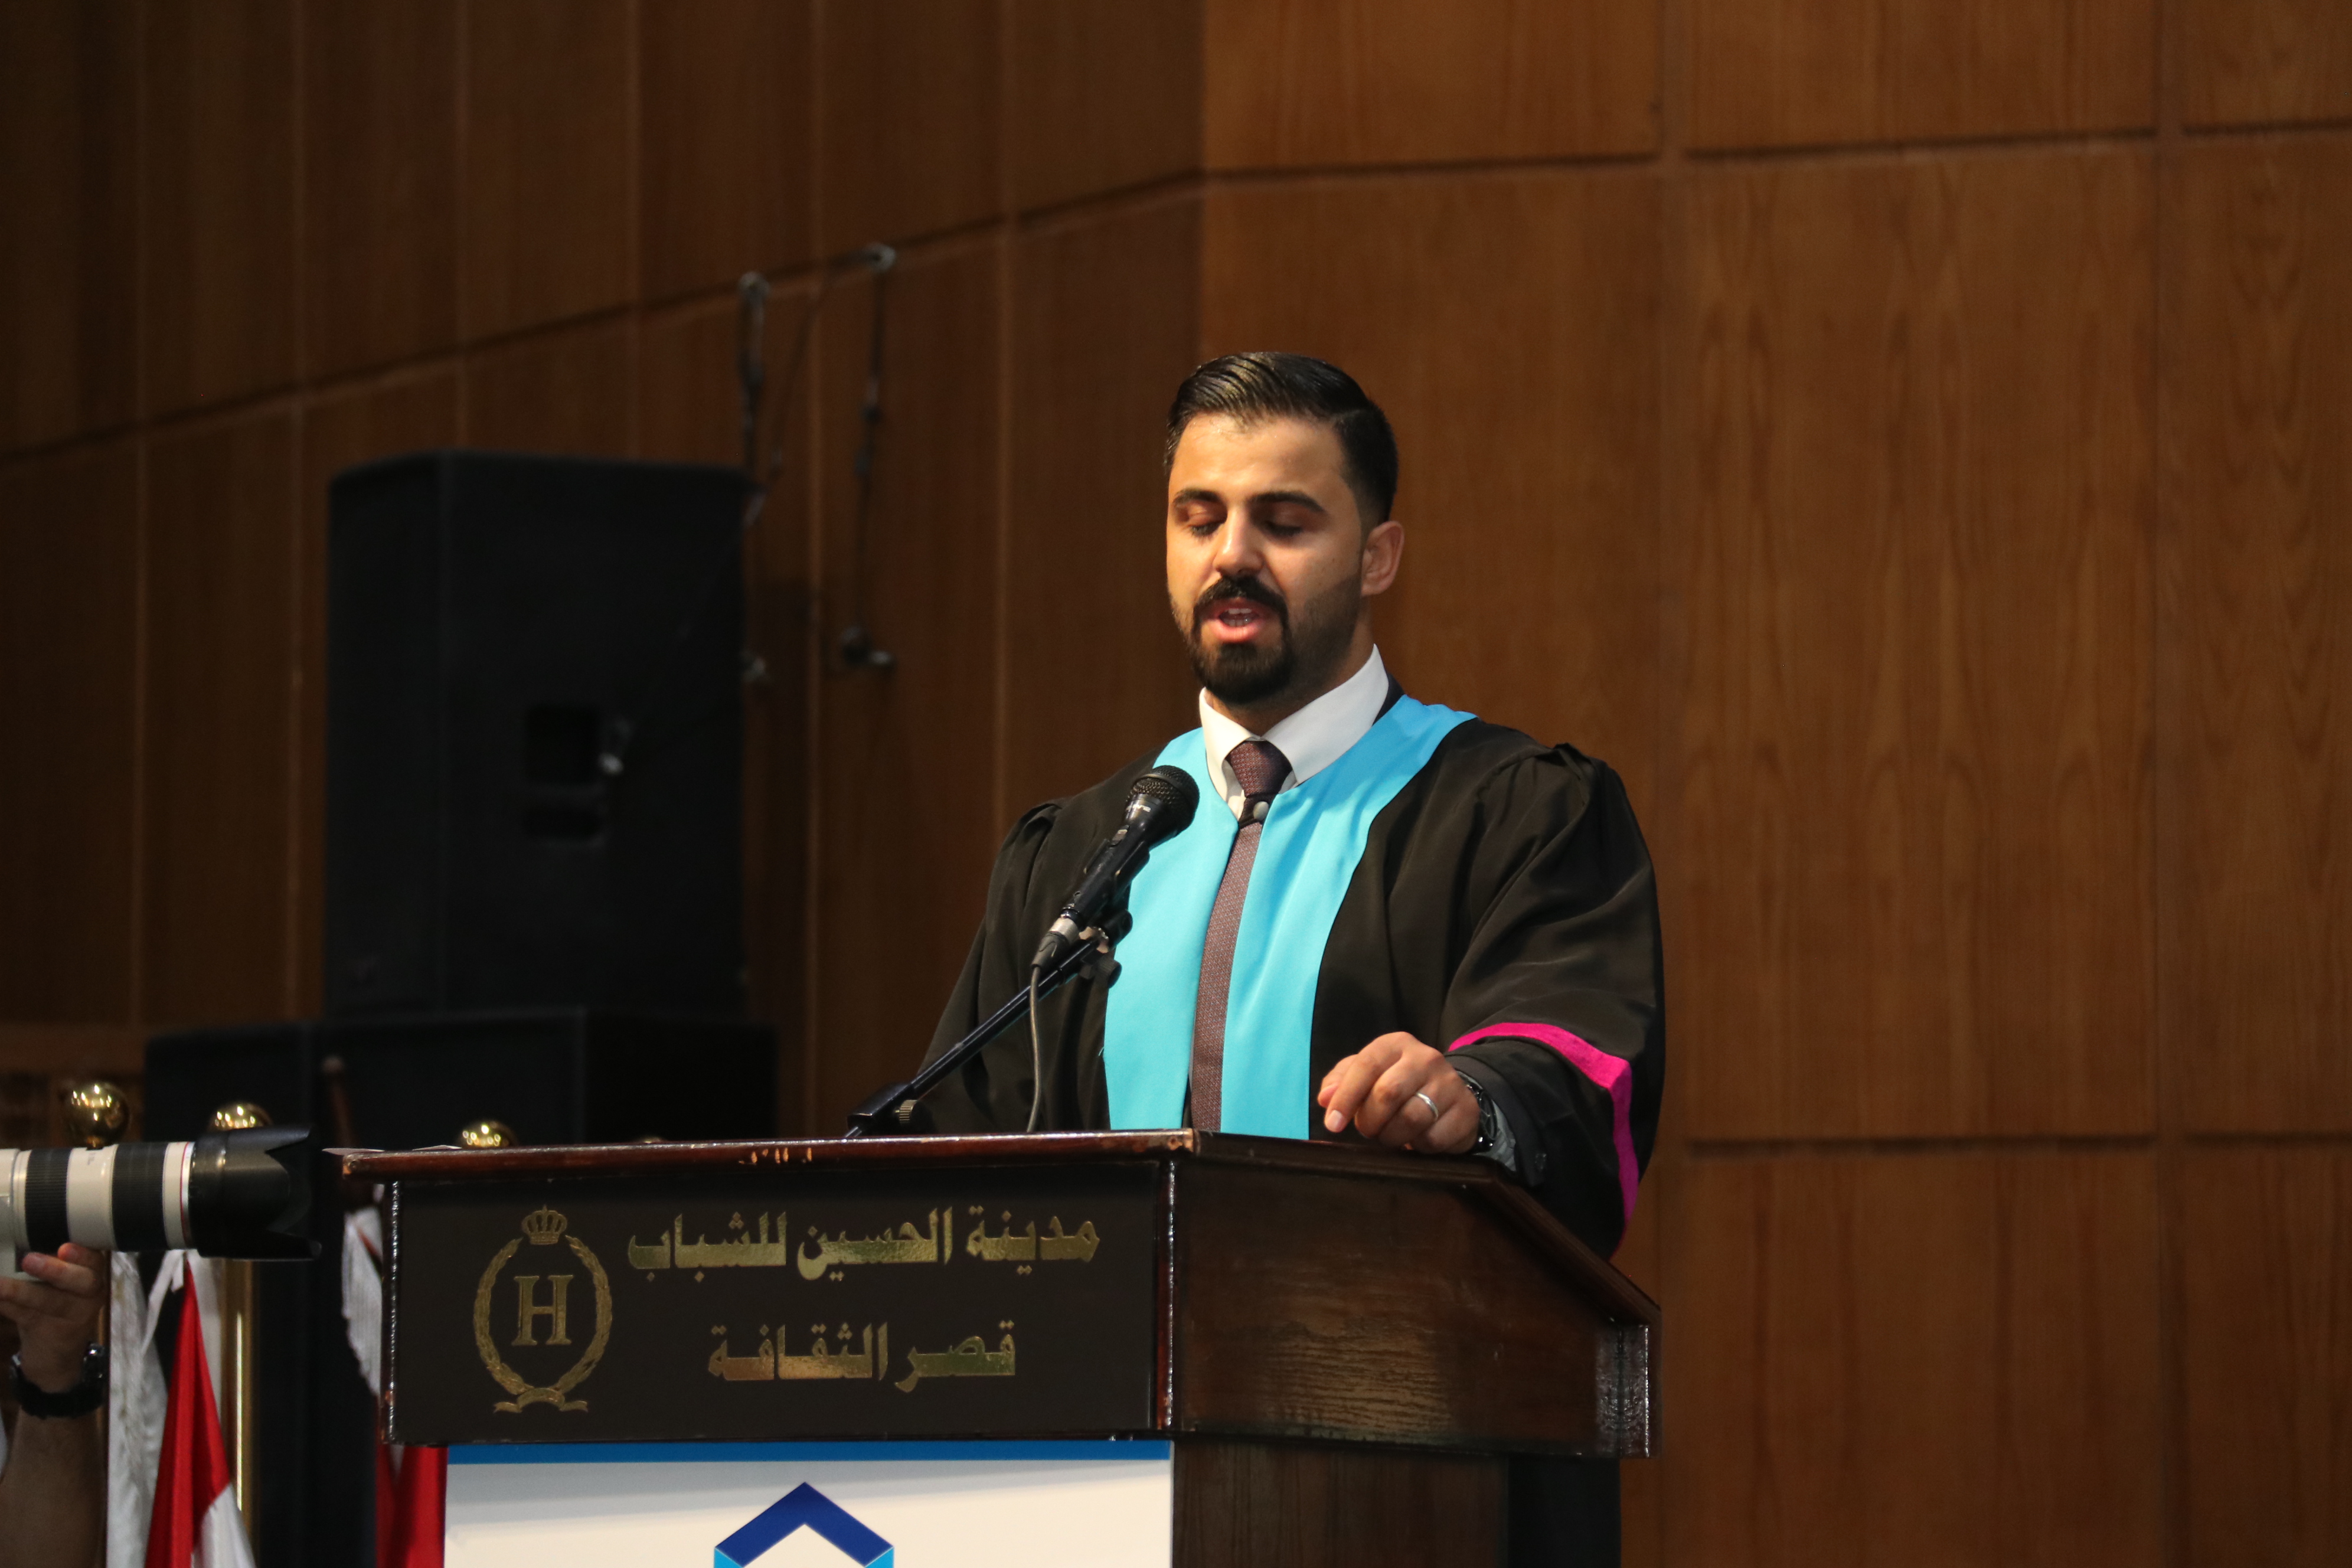 مشاهد أولية لاحتفالات جامعة عمان العربية بخريجيها للعام الدراسي 2021-202217